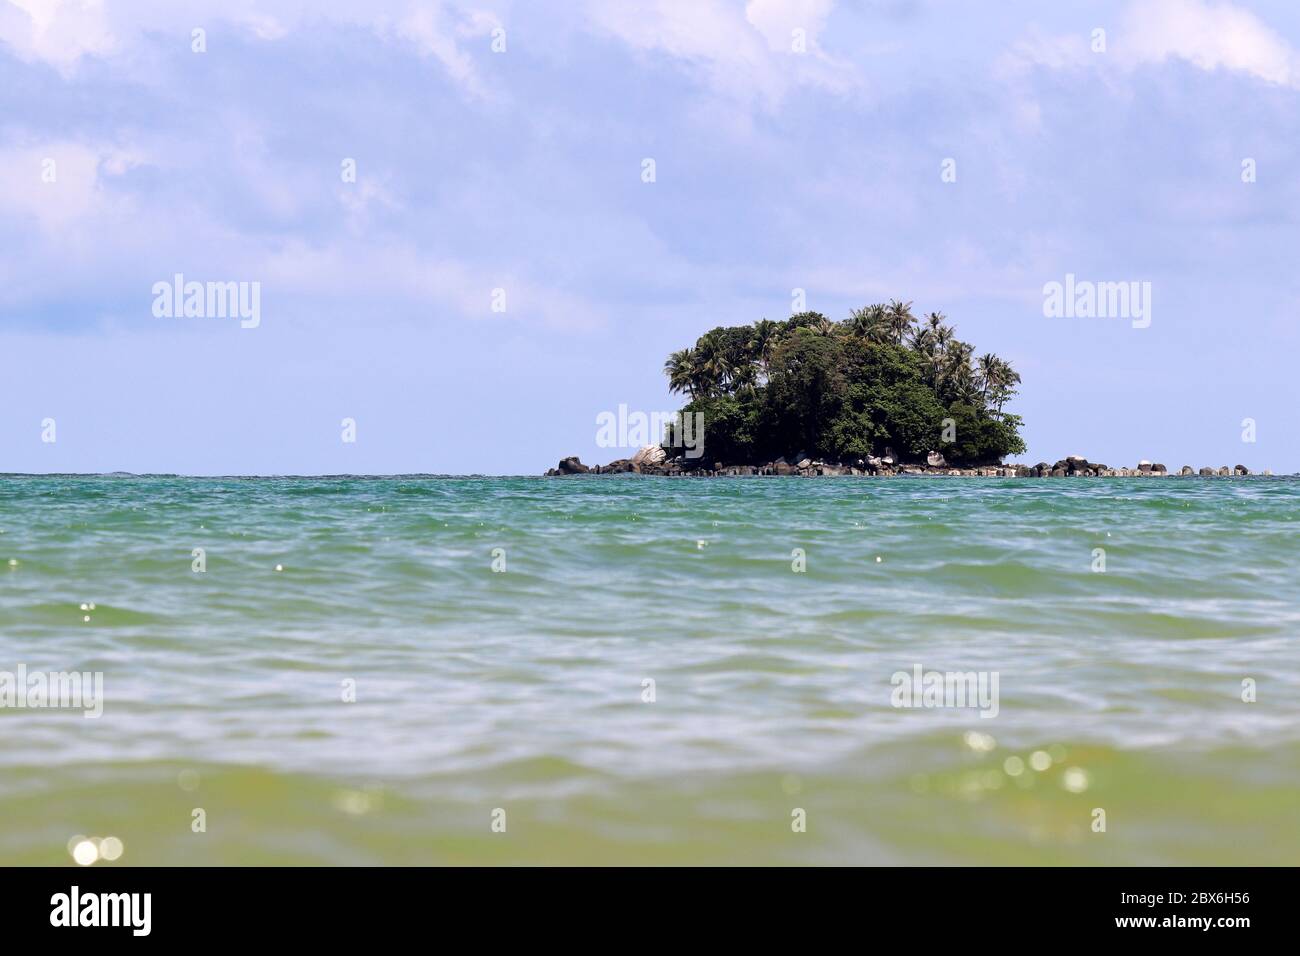 Île tropicale avec palmiers à noix de coco dans un océan, vue pittoresque de l'eau, foyer sélectif. Paysage marin coloré avec ciel bleu Banque D'Images